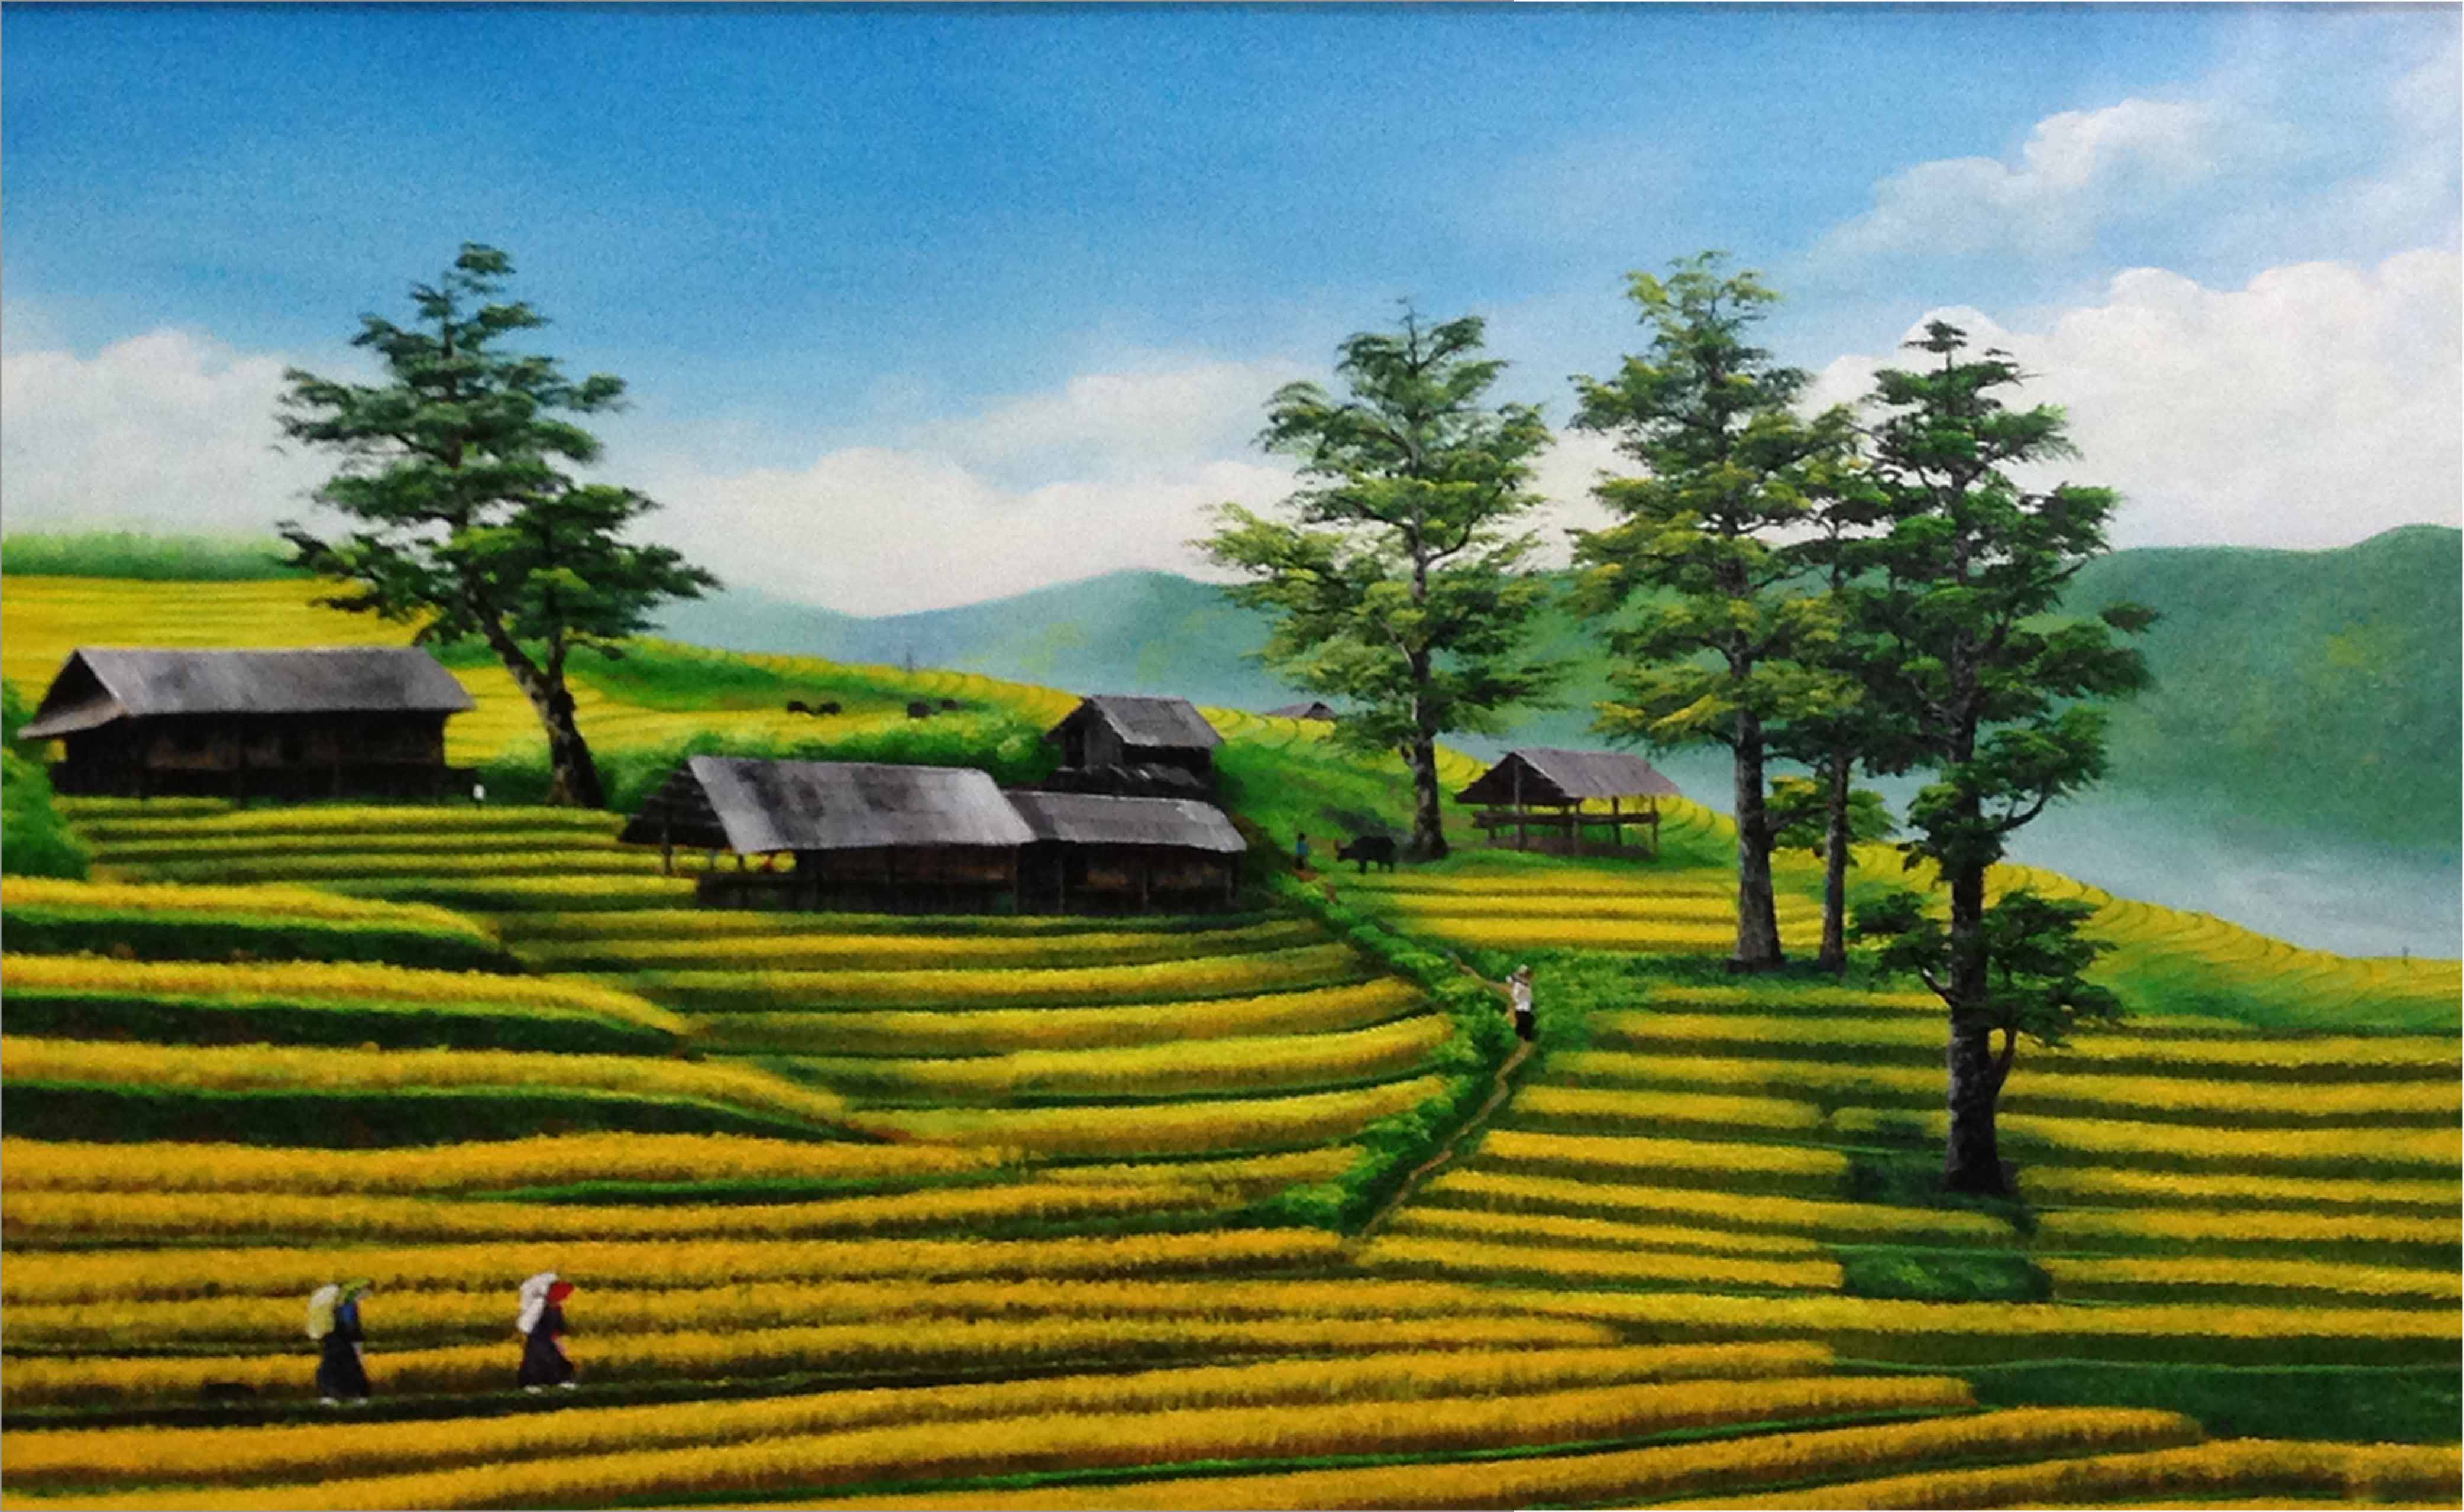 Oil painting landscape of Northwest Vietnam - TSD281LHAR 6